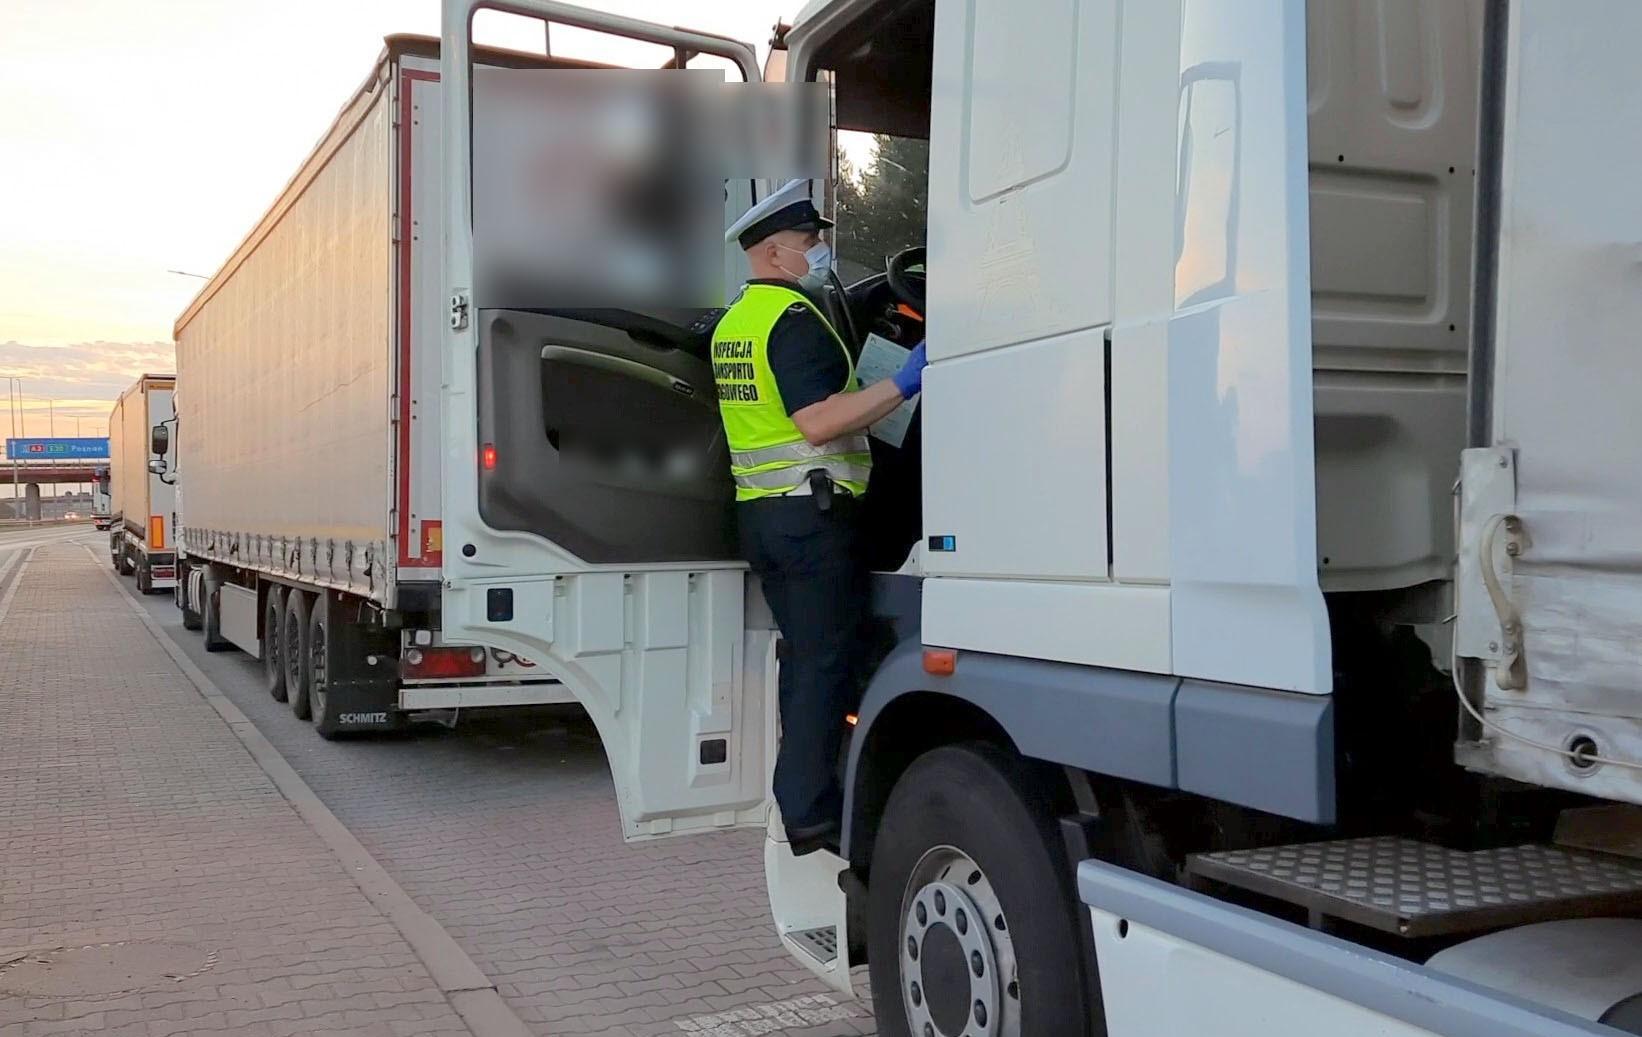 Inspektor stoi w drzwiach kabiny ciężarówki i pobiera dokumenty od kierowcy.